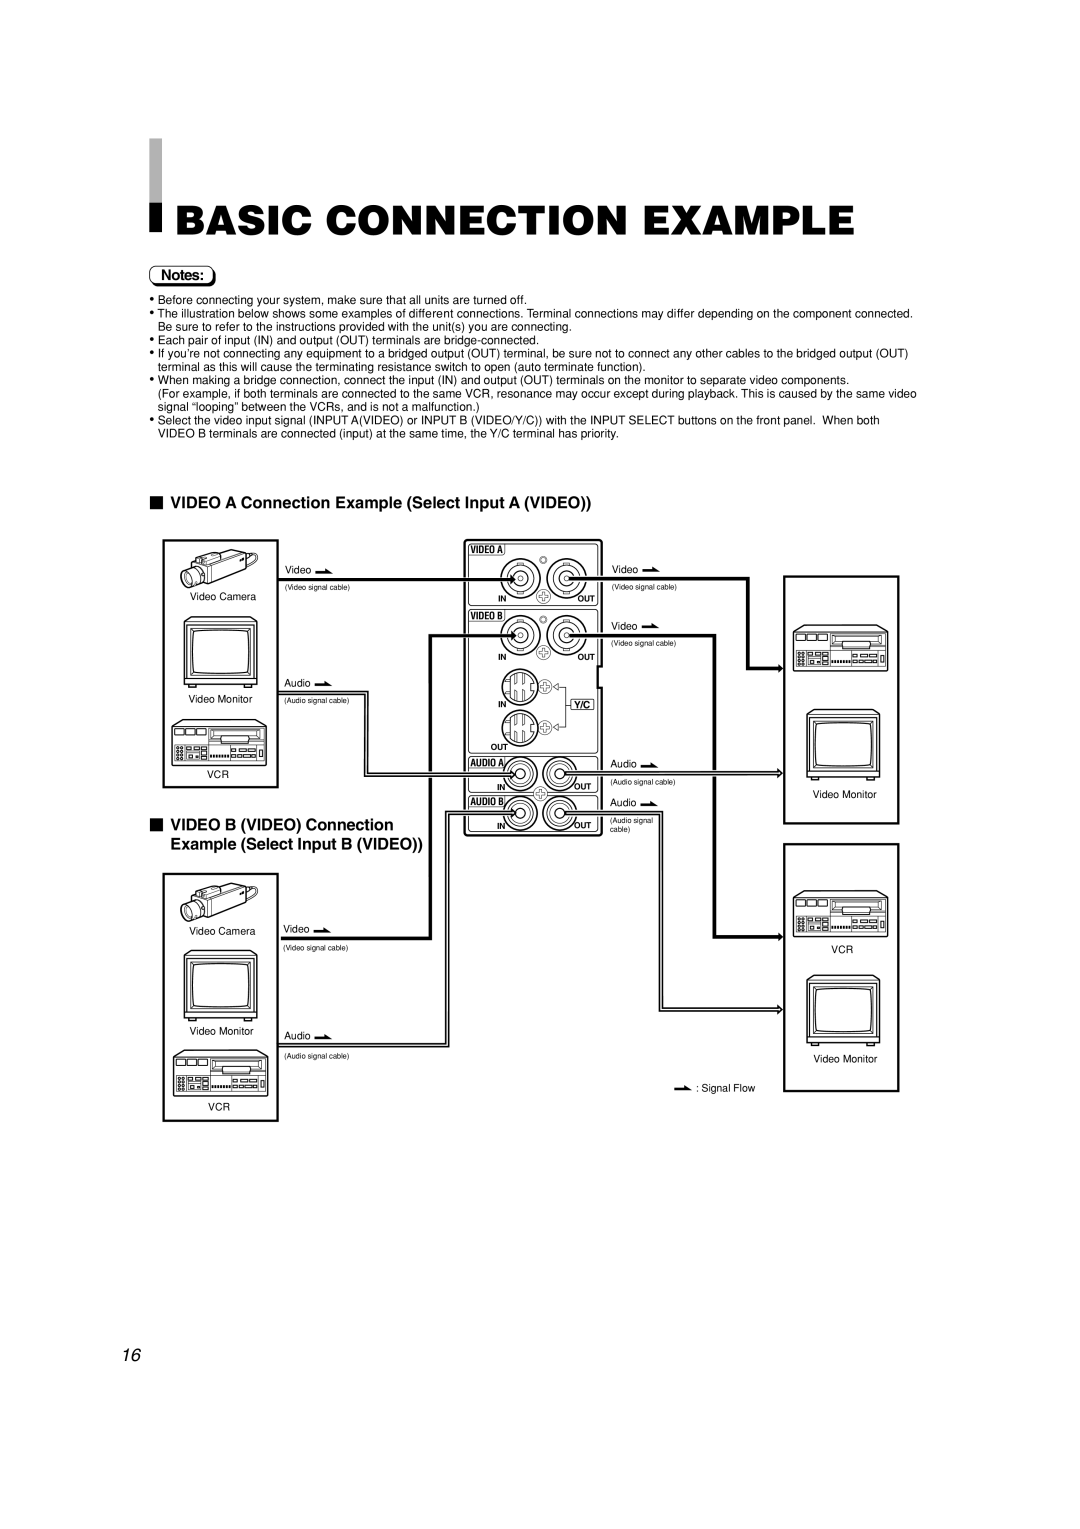 JVC TM-H1950CG manual  Video B Video Connection Example Select Input B Video, Basic Connection Example 